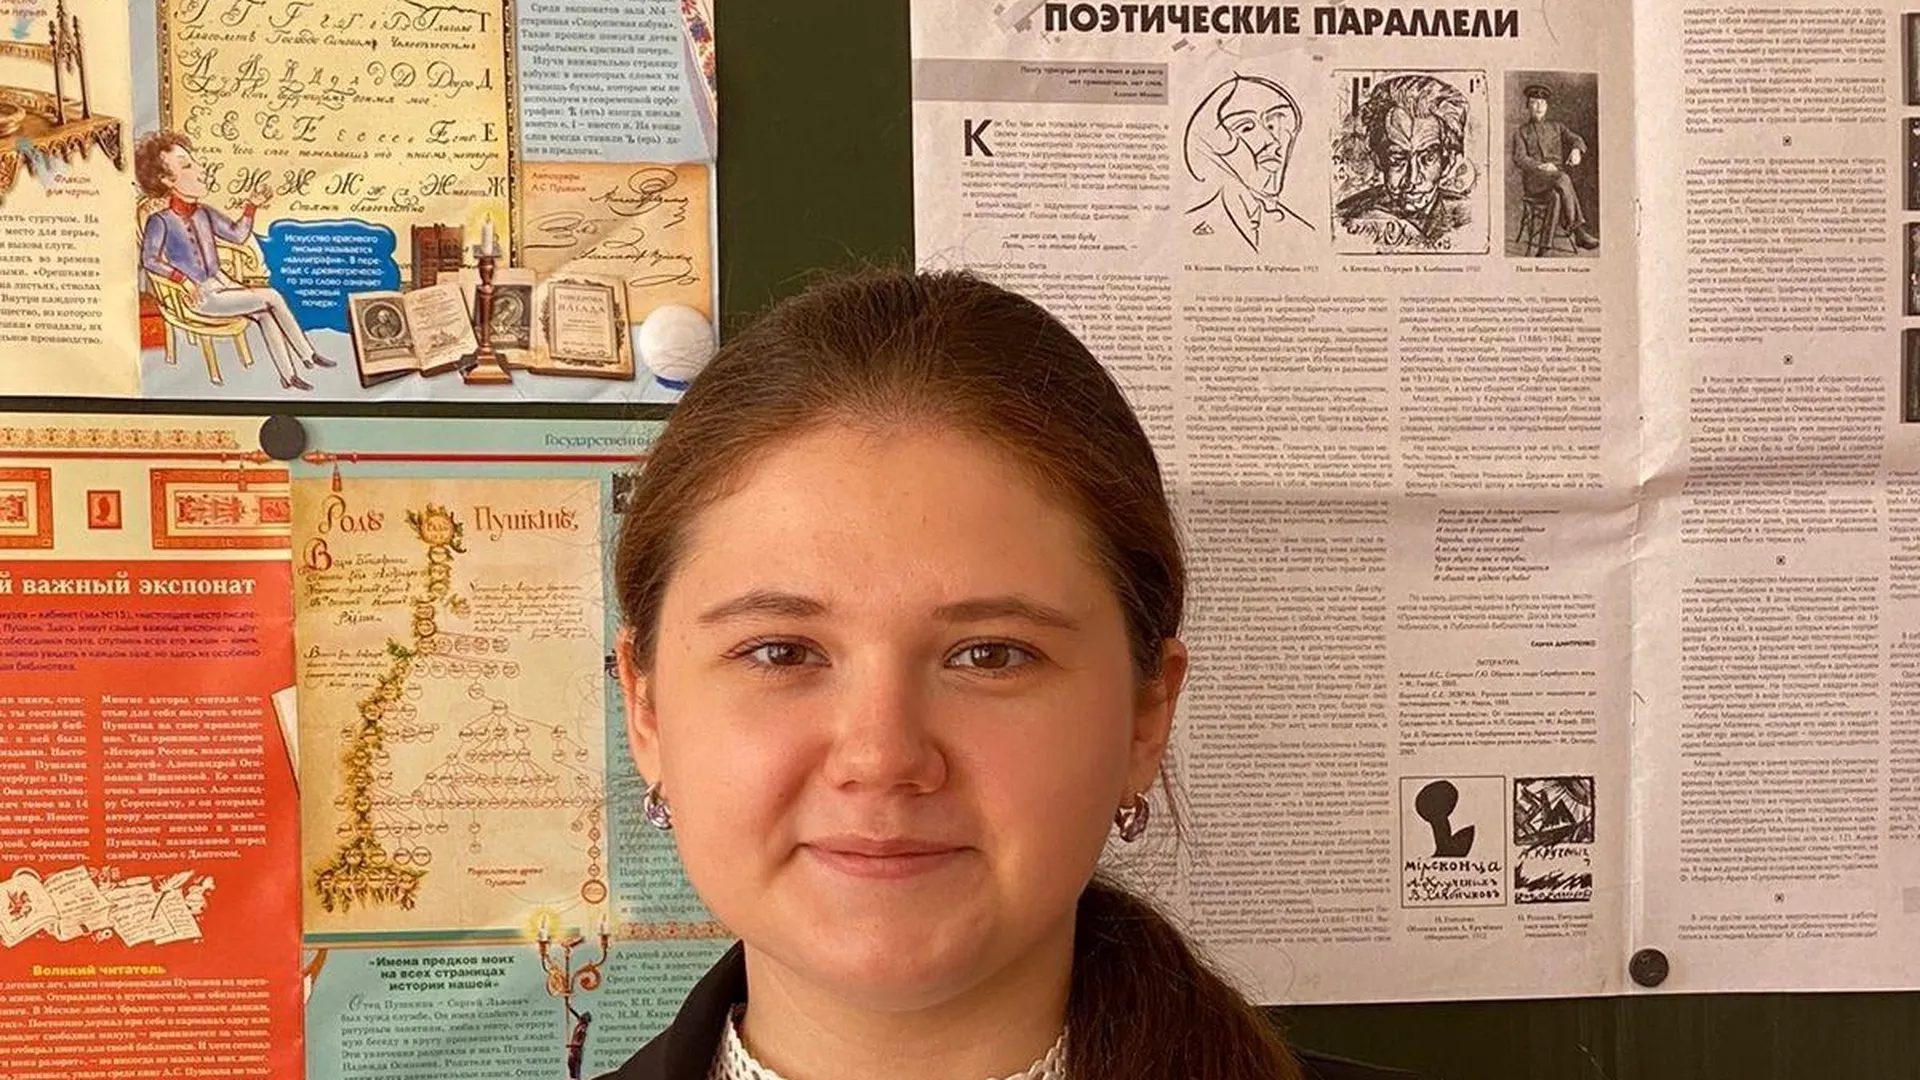 Студентка из Орехово-Зуево победила в конкурсе поэтов-переводчиков в Томске